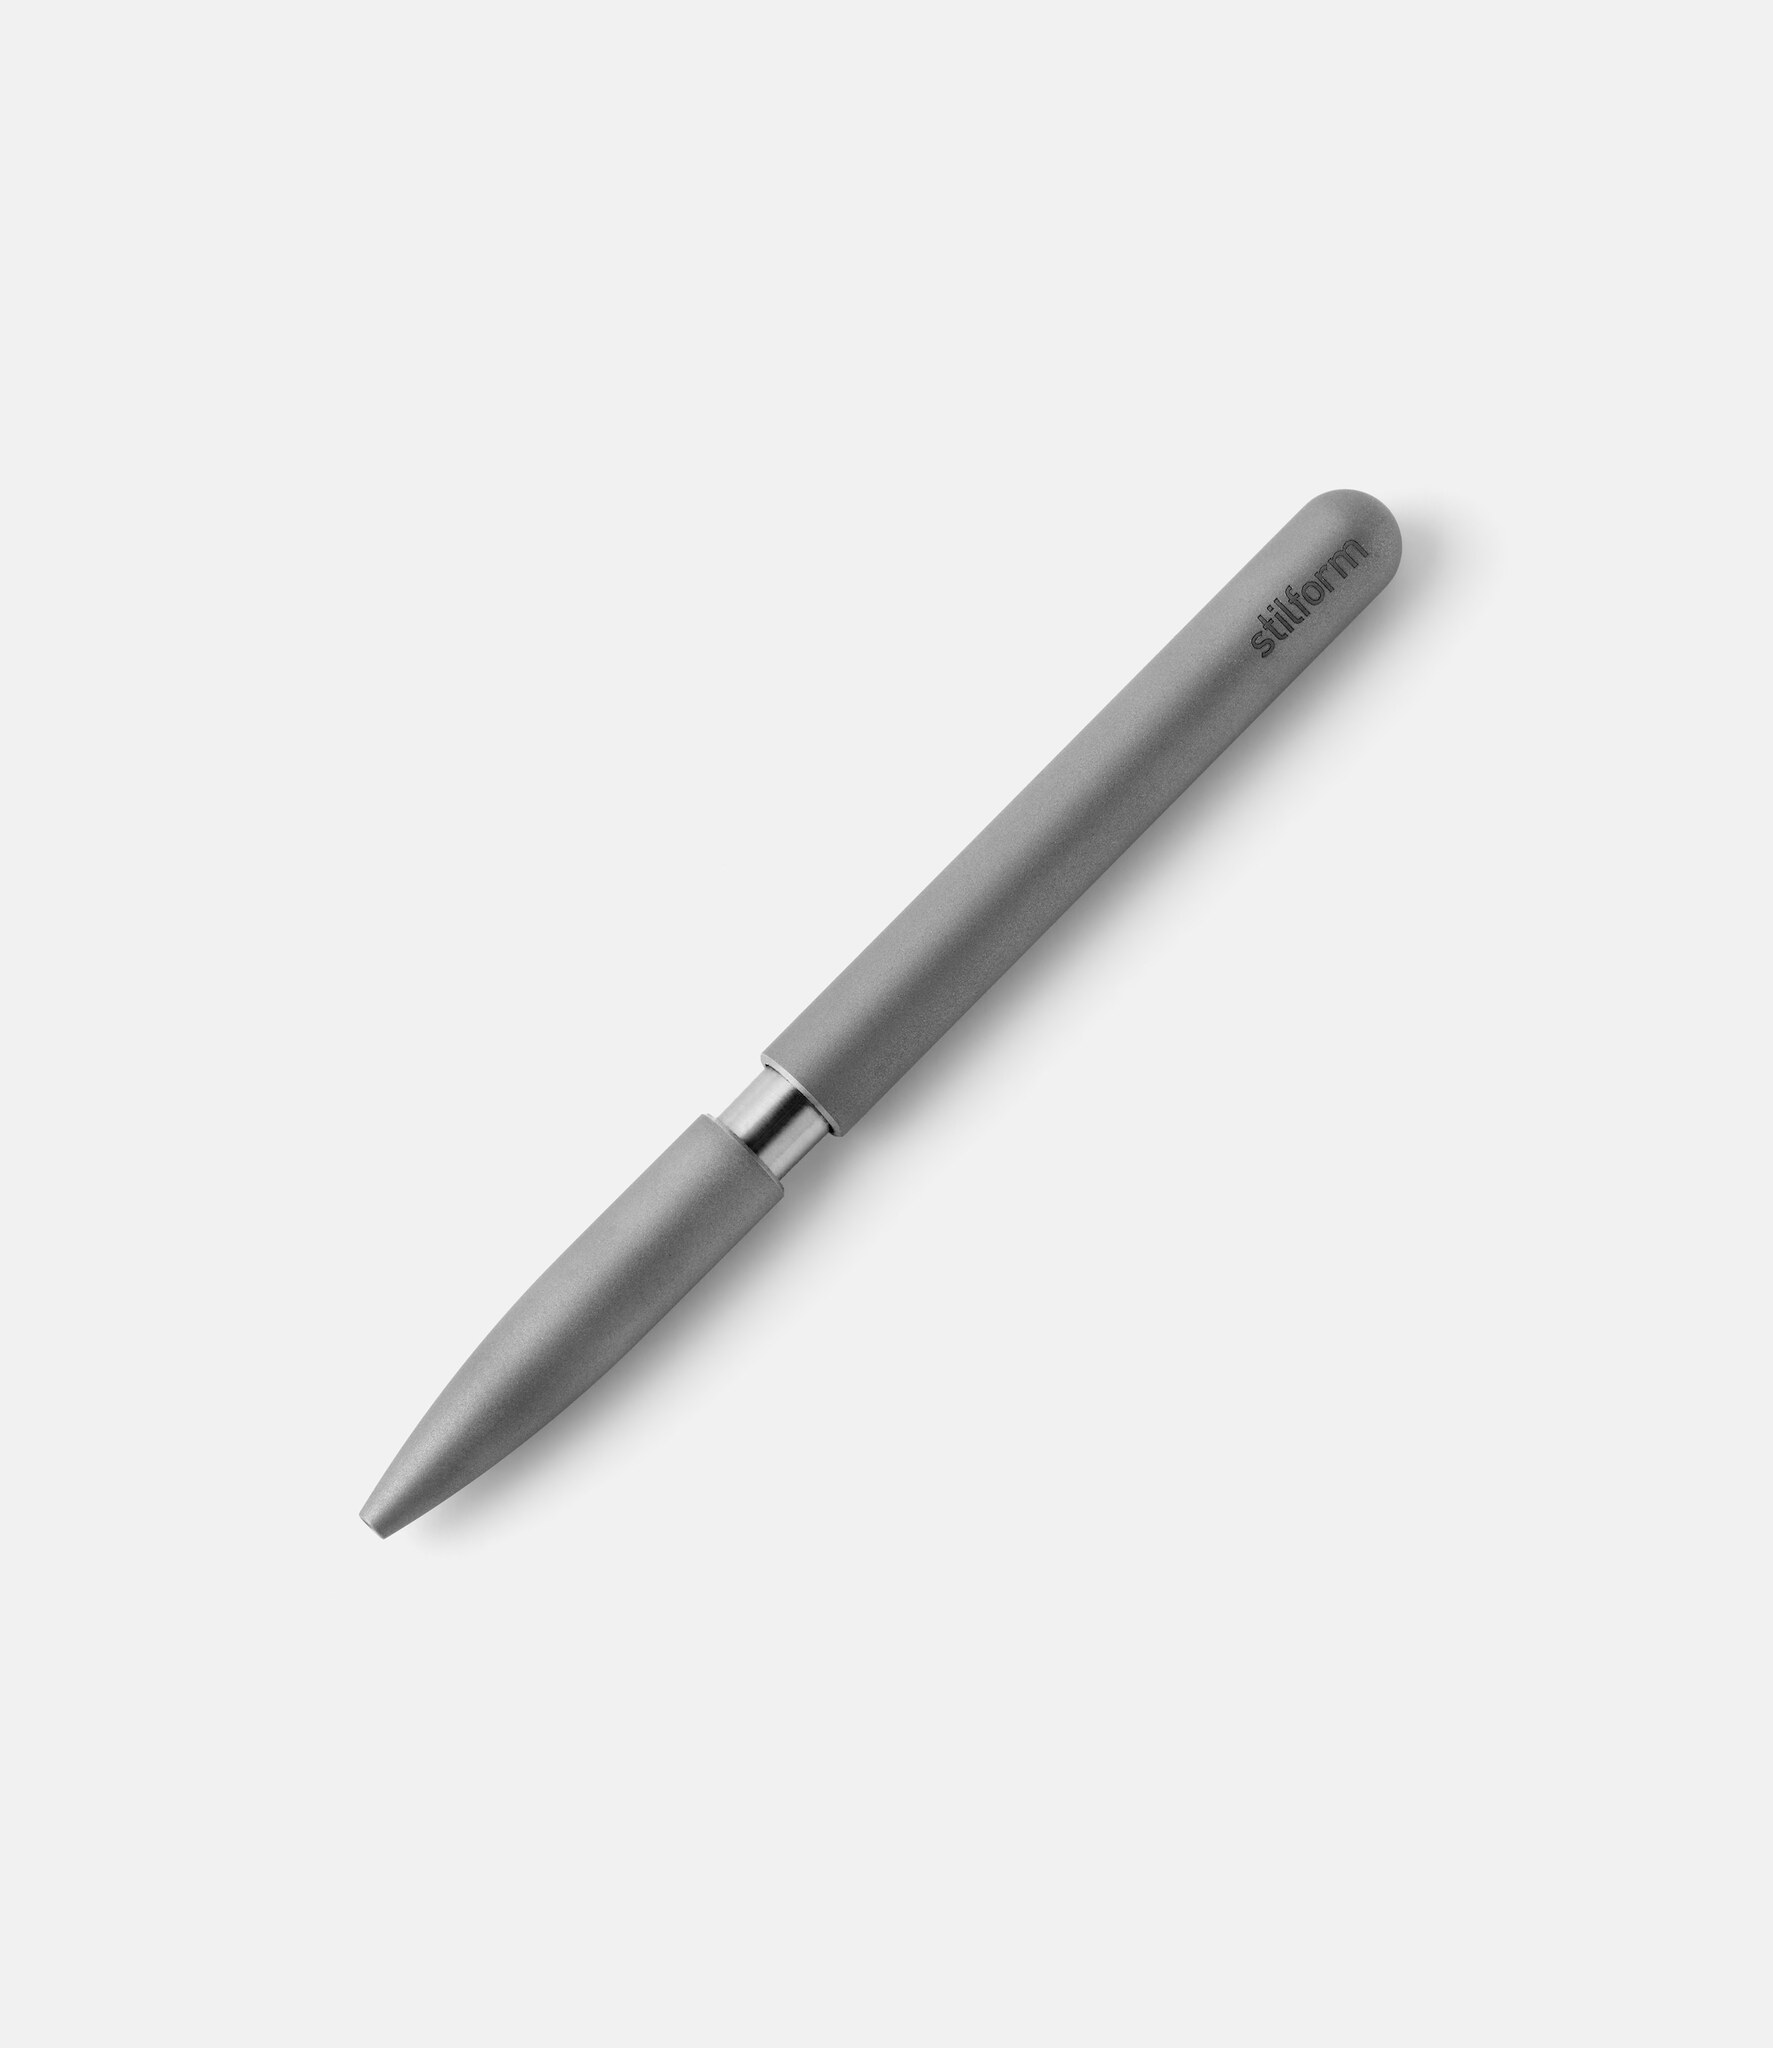 Ручки Космос — купить в интернет-магазине OZON по выгодной цене